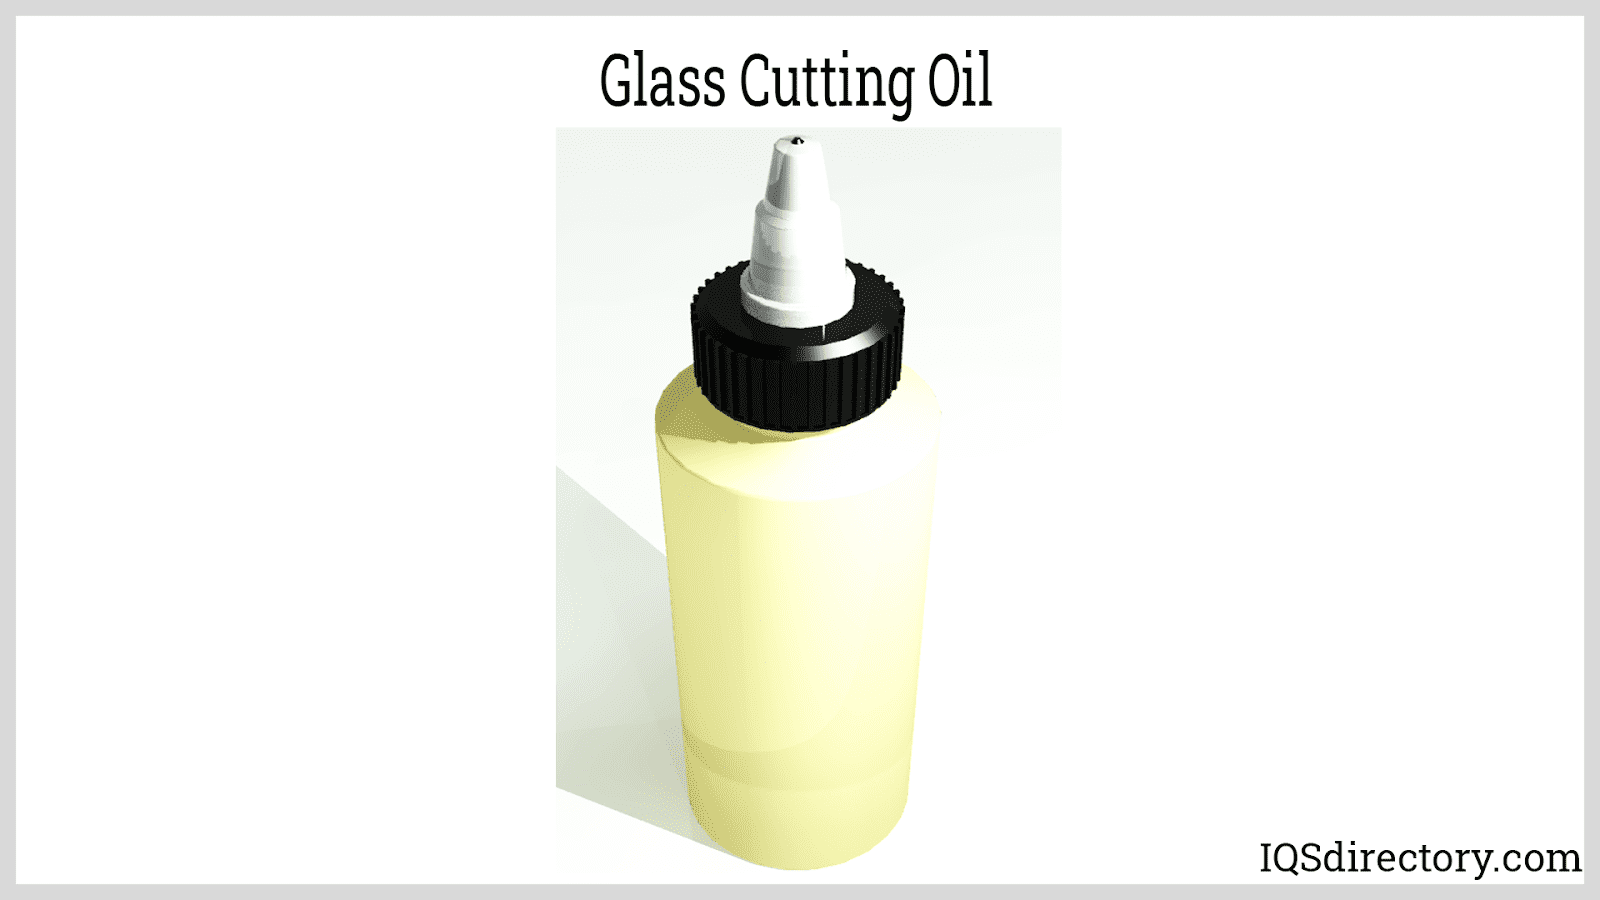 Glass Cutting Oil